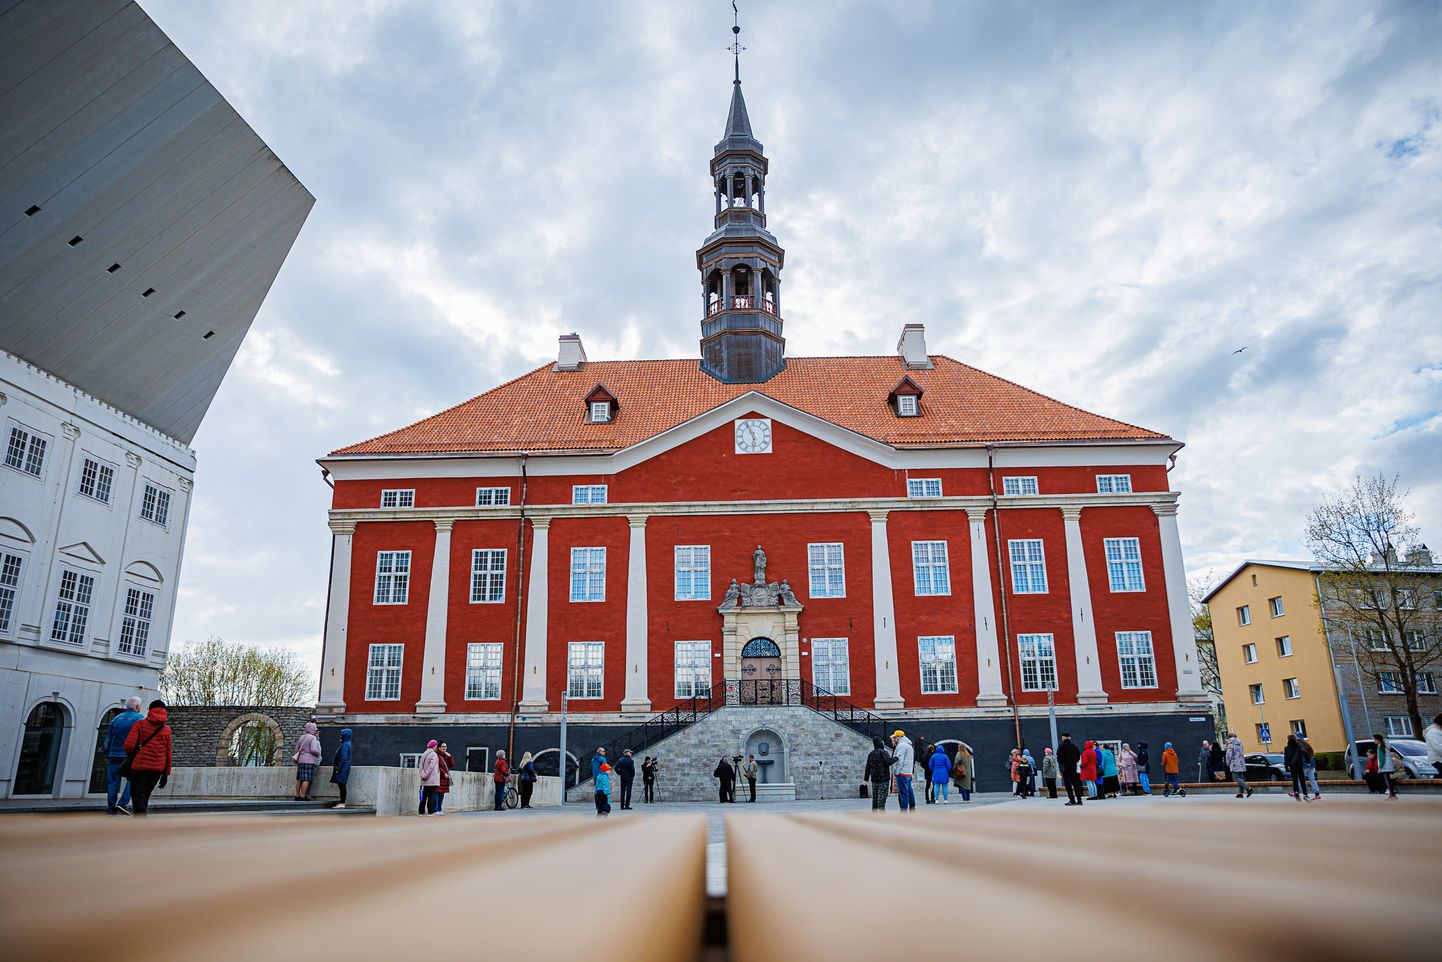 Обновленная ратуша стала популярным туристическим объектом, а Нарвский симфонический оркестр готов устраивать здесь концерты.